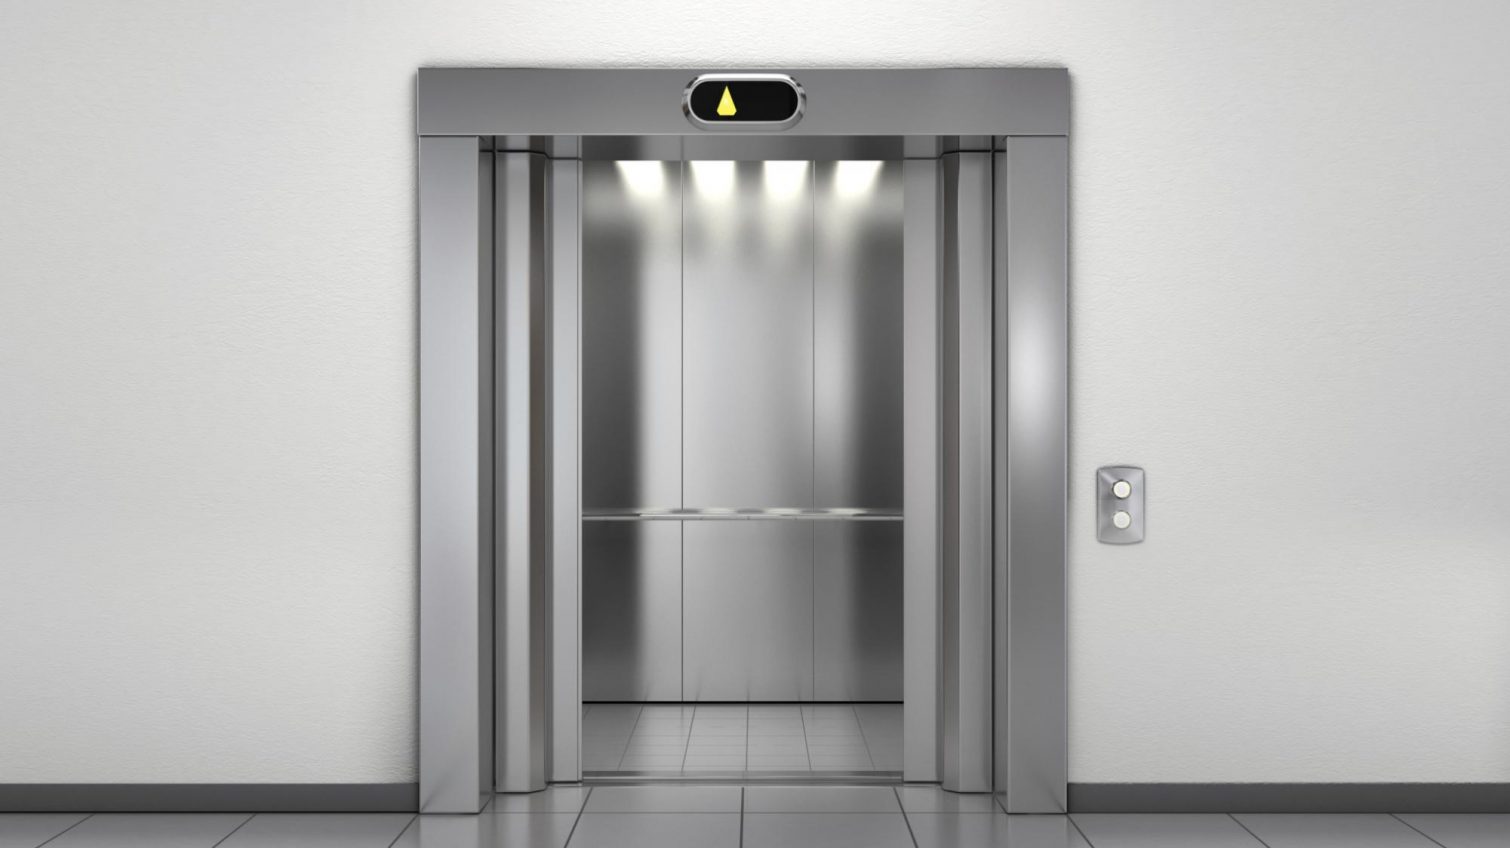 Лифтовый скандал: депутаты отказались выделять деньги на лифты, пока не разберутся с неработающими после модернизации «фото»